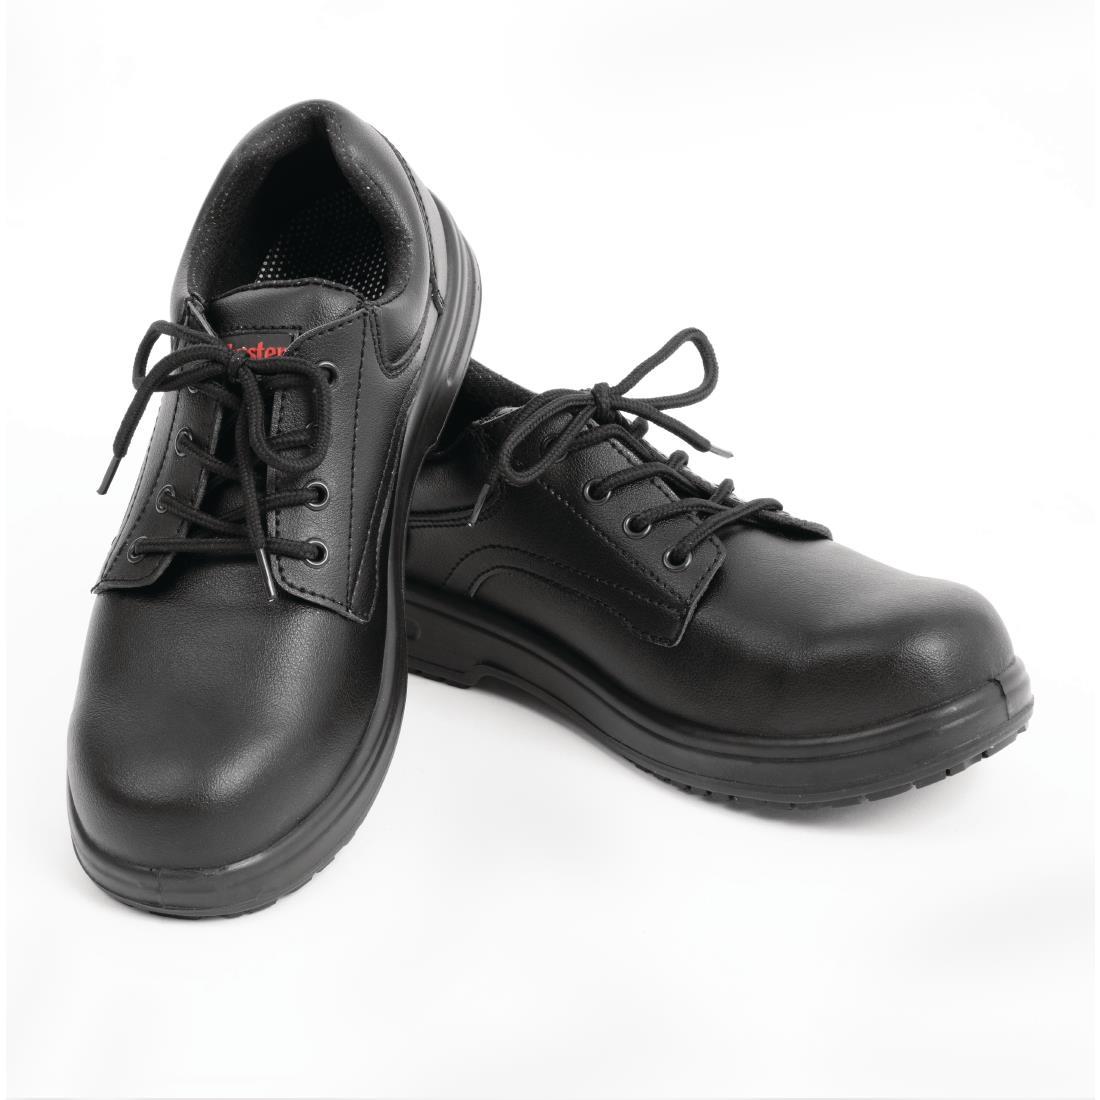 Slipbuster Basic Toe Cap Safety Shoes Black 36 - BB497-36  - 4